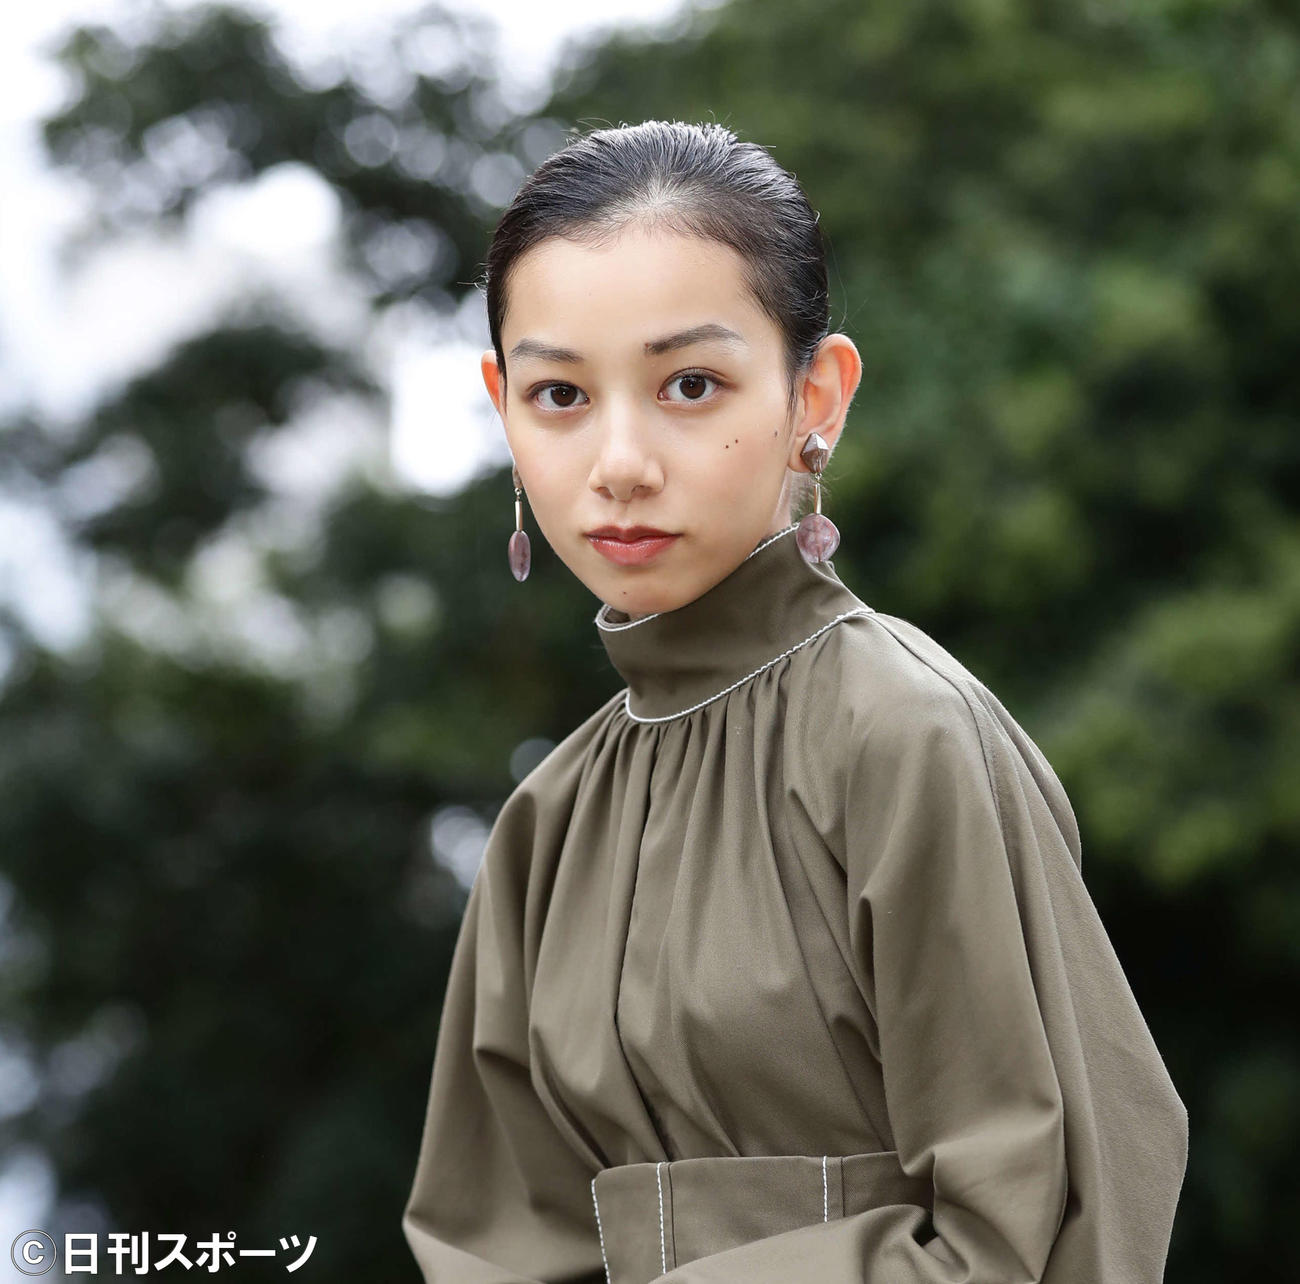 秋の装いがよく似合う長澤樹。カメラを向けると、15歳とは思えない大人びた表情や仕草を醸し出した（2021年9月撮影）